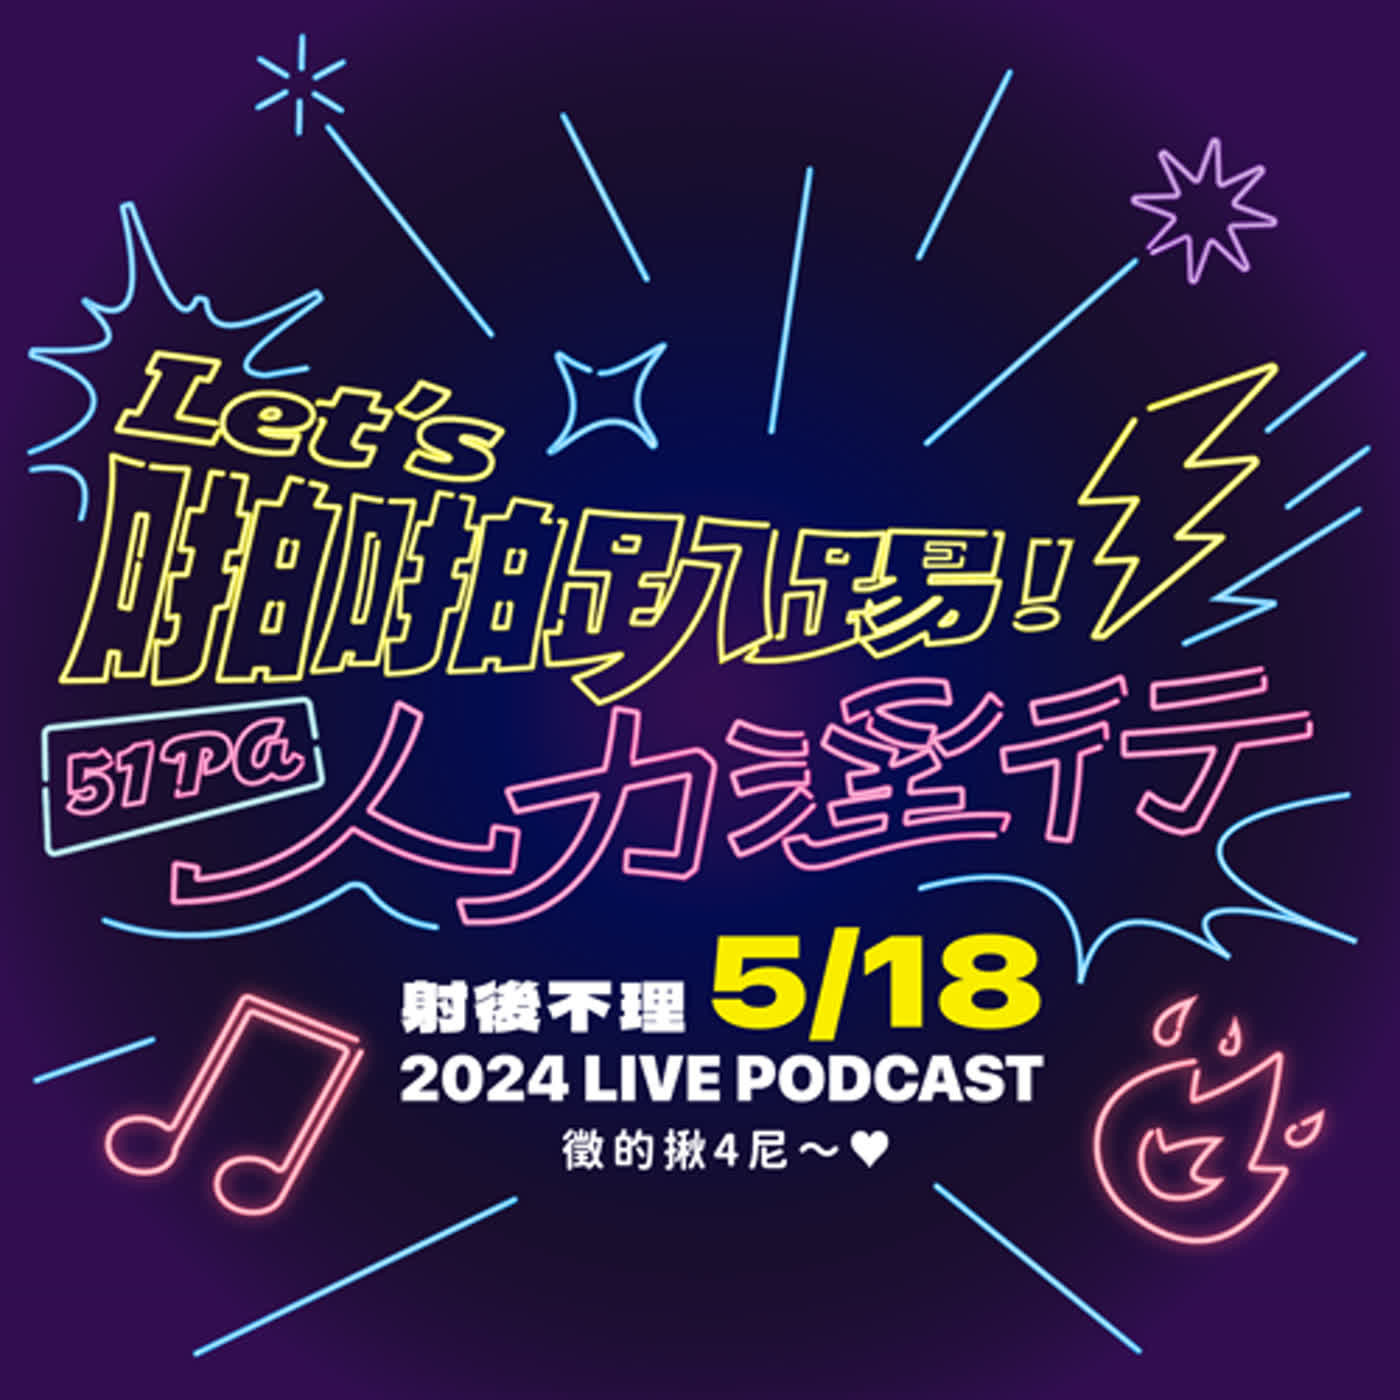 【預告】四週年 LIVE Podcast 活動預告 2/14預購開始